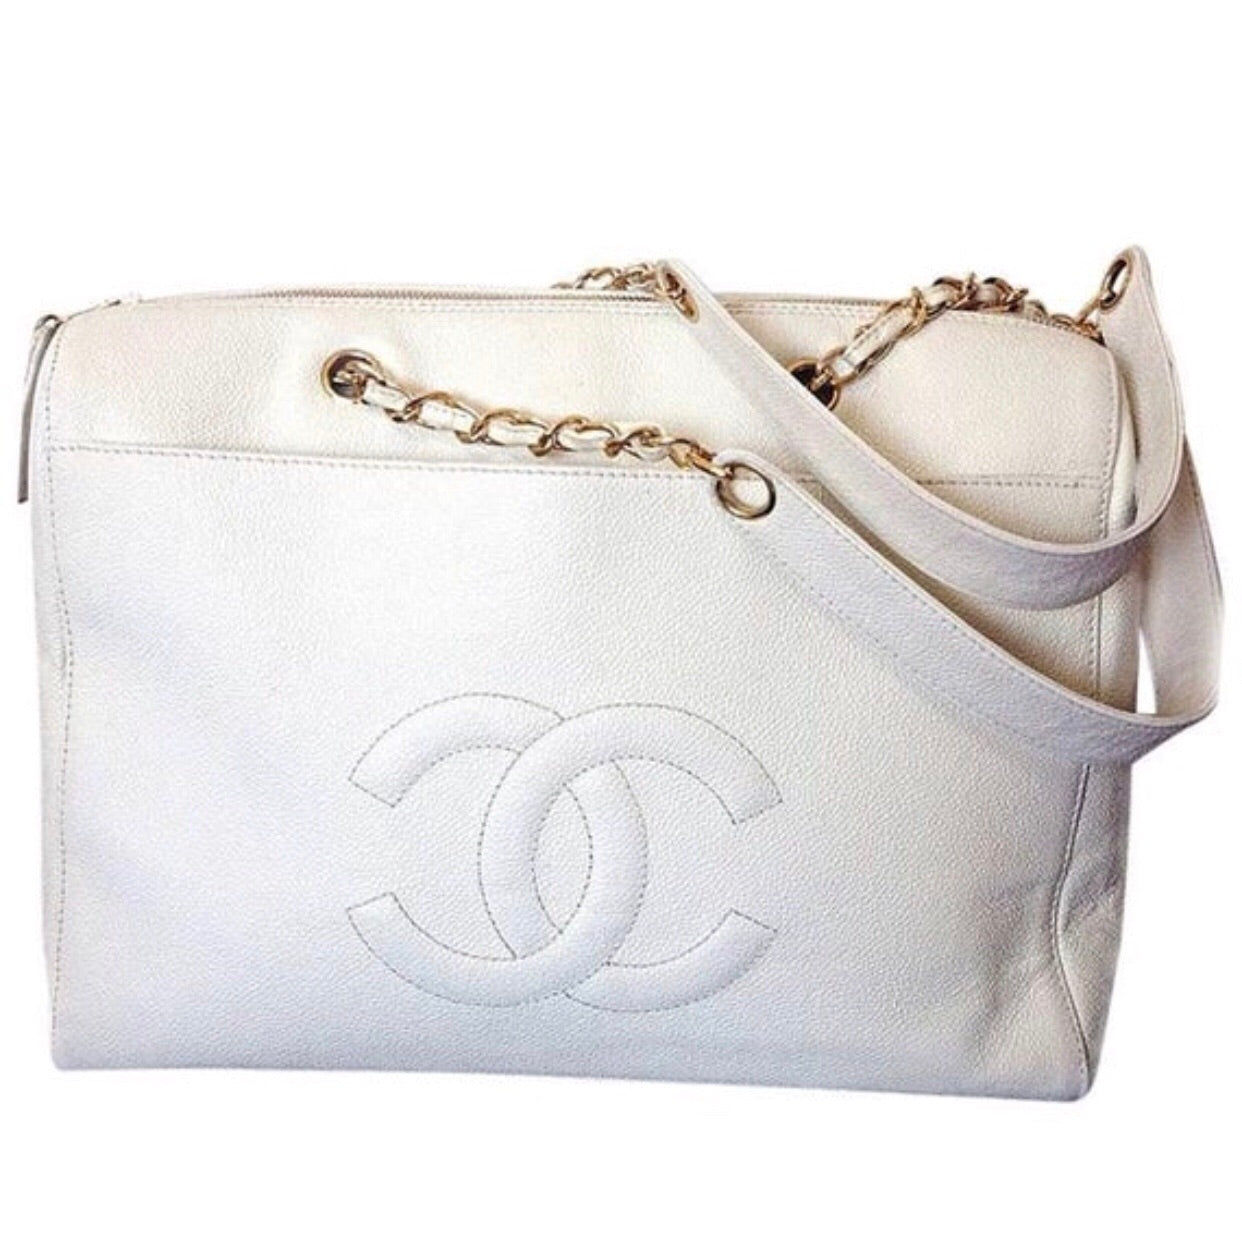 Chain Shoulder Bag - White